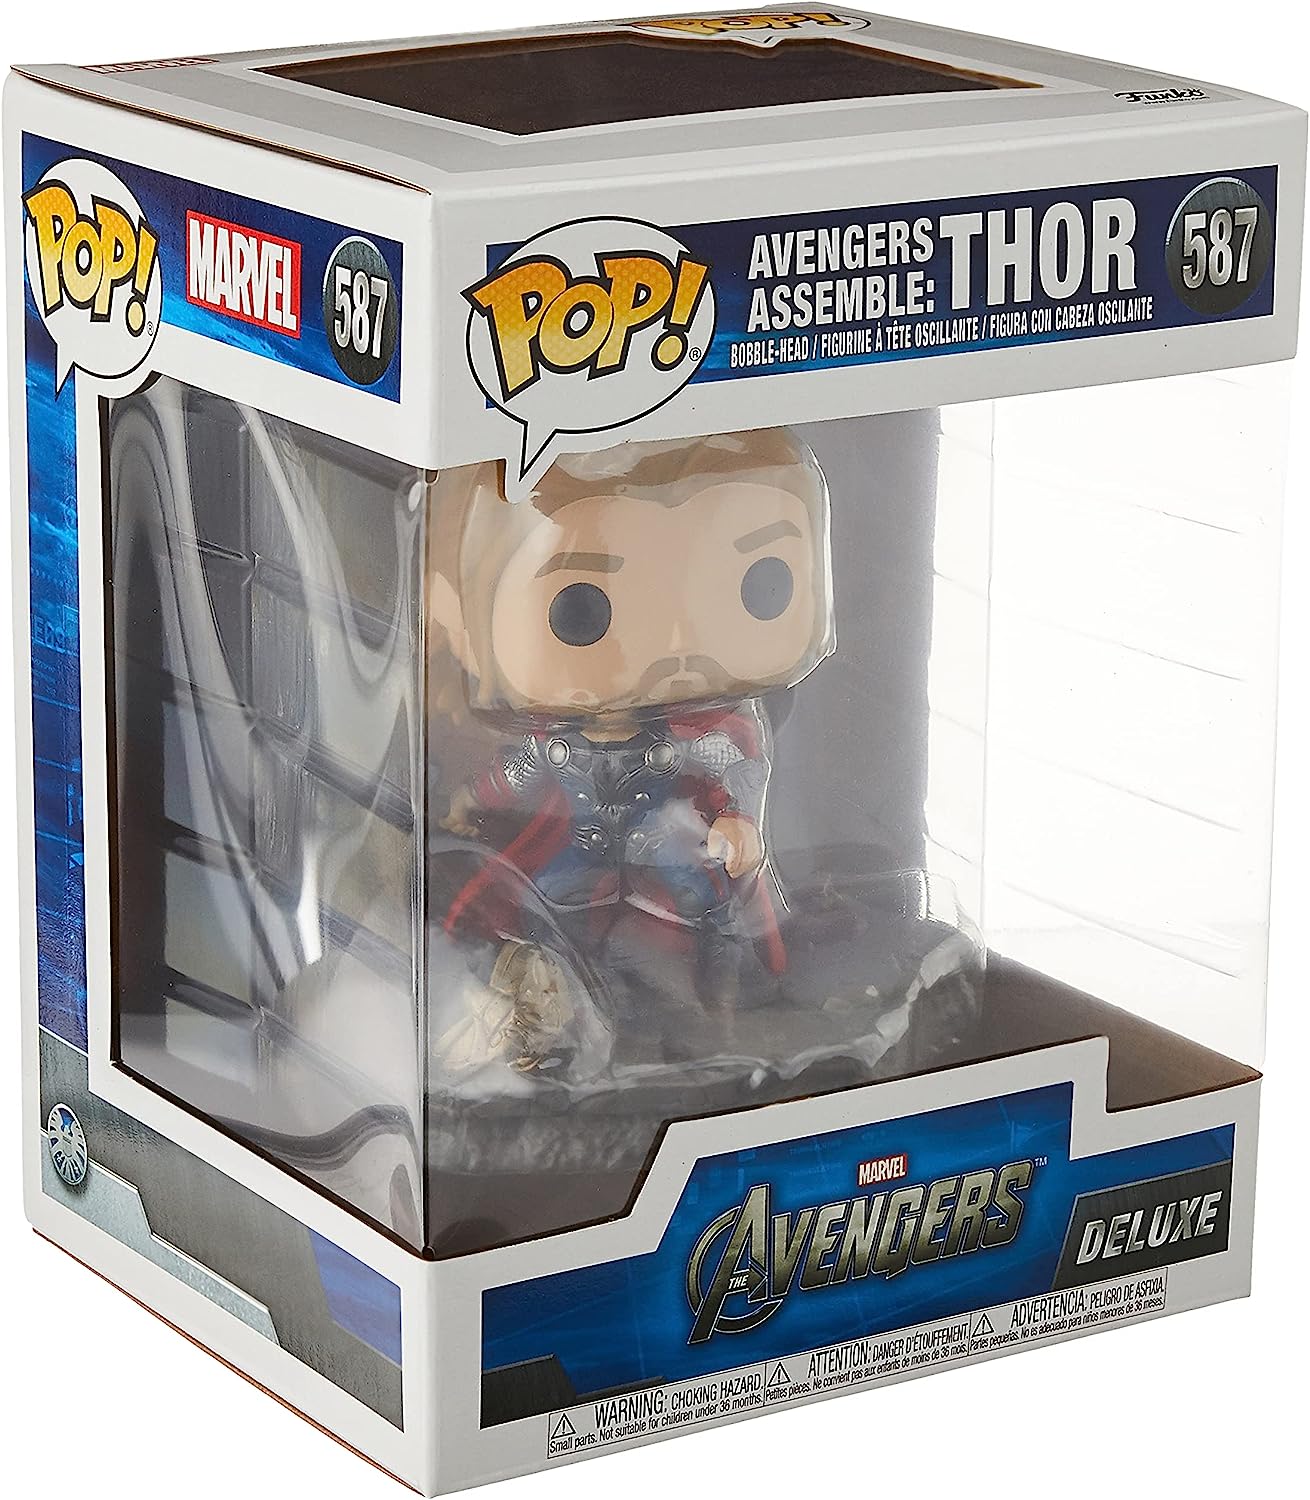 Фигурка Funko Pop! Deluxe Marvel: Avengers Assemble Series - Thor коллекционная фигурка тора из комиксов marvel 16 см plexido